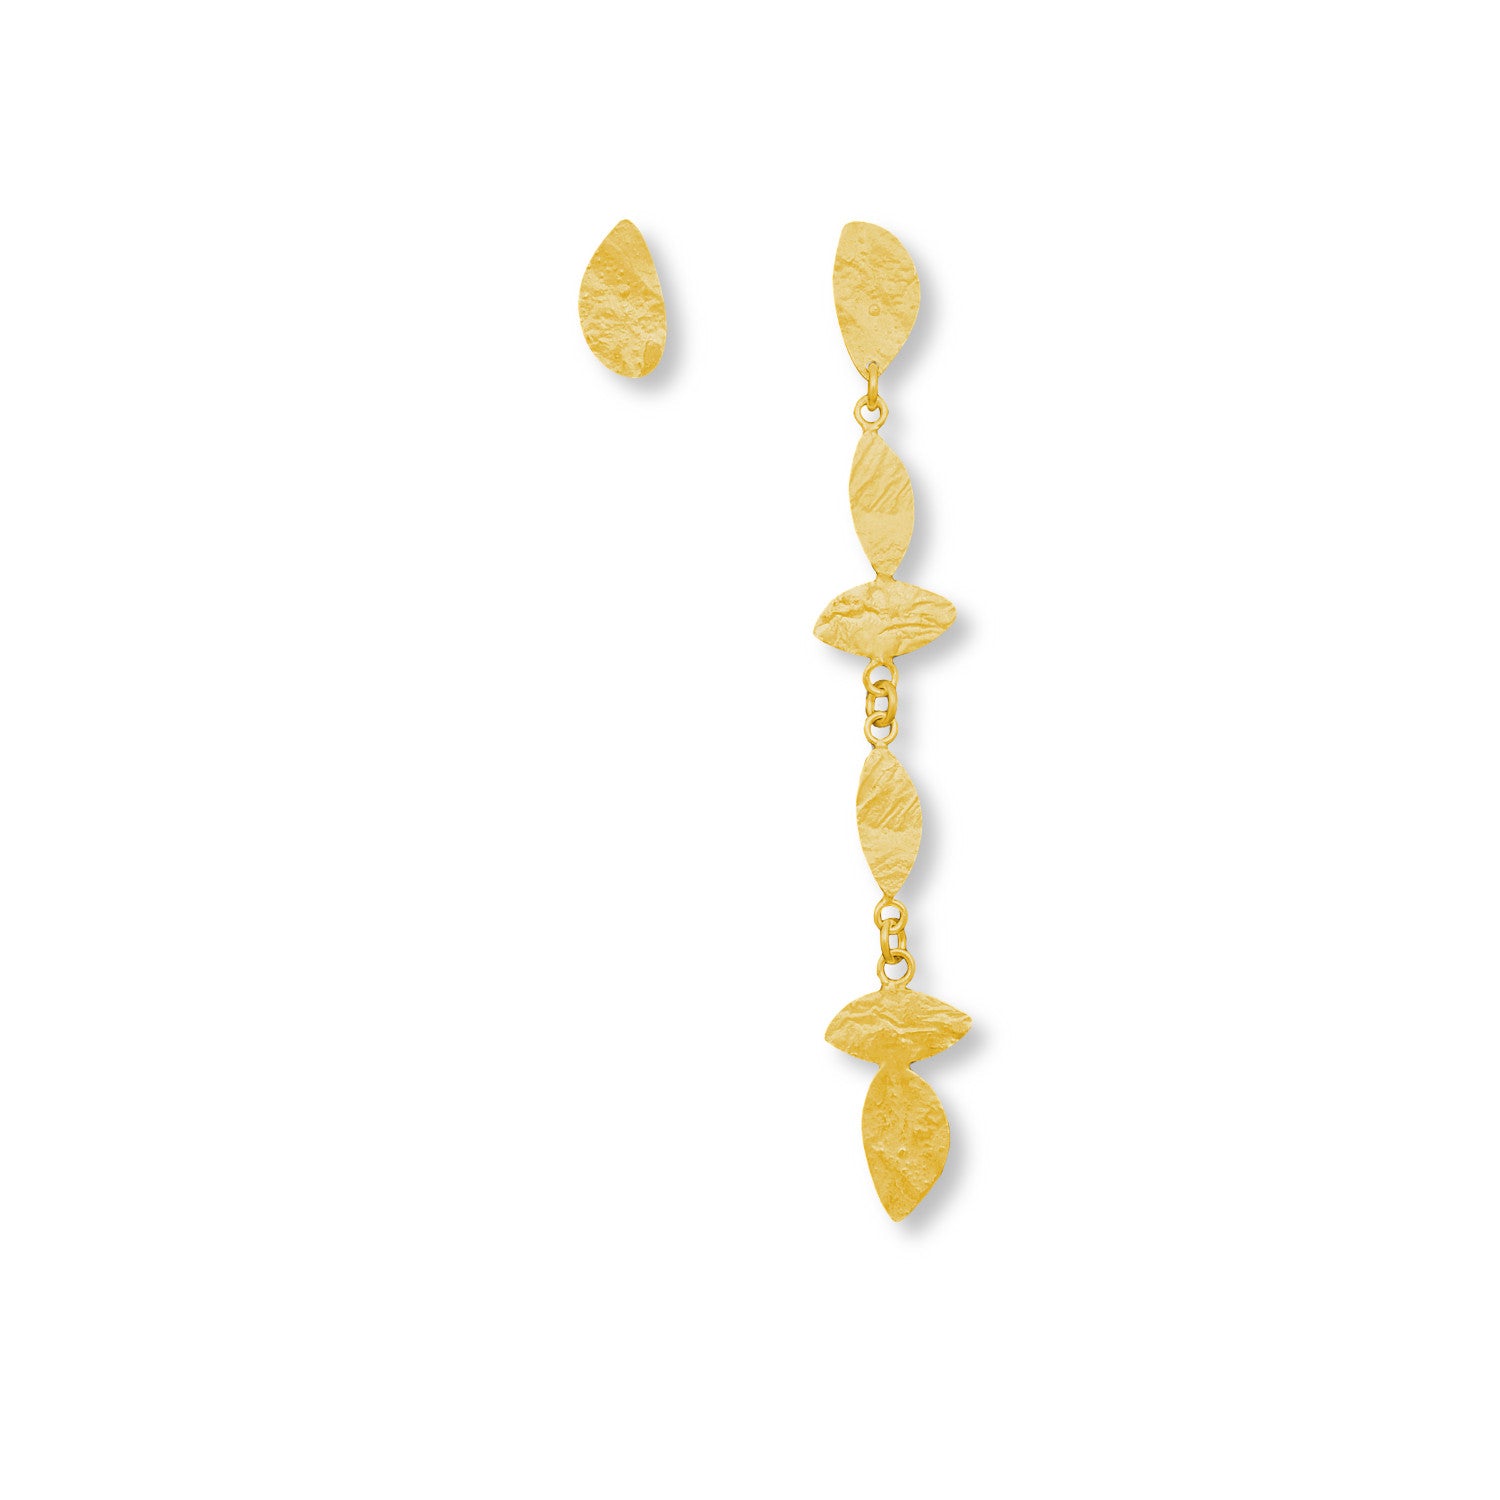 Μακρυά Χρυσά Άνισα Χειροποίητα Σκουλαρίκια Φύλλα Reticulated (gold plated) Νο1